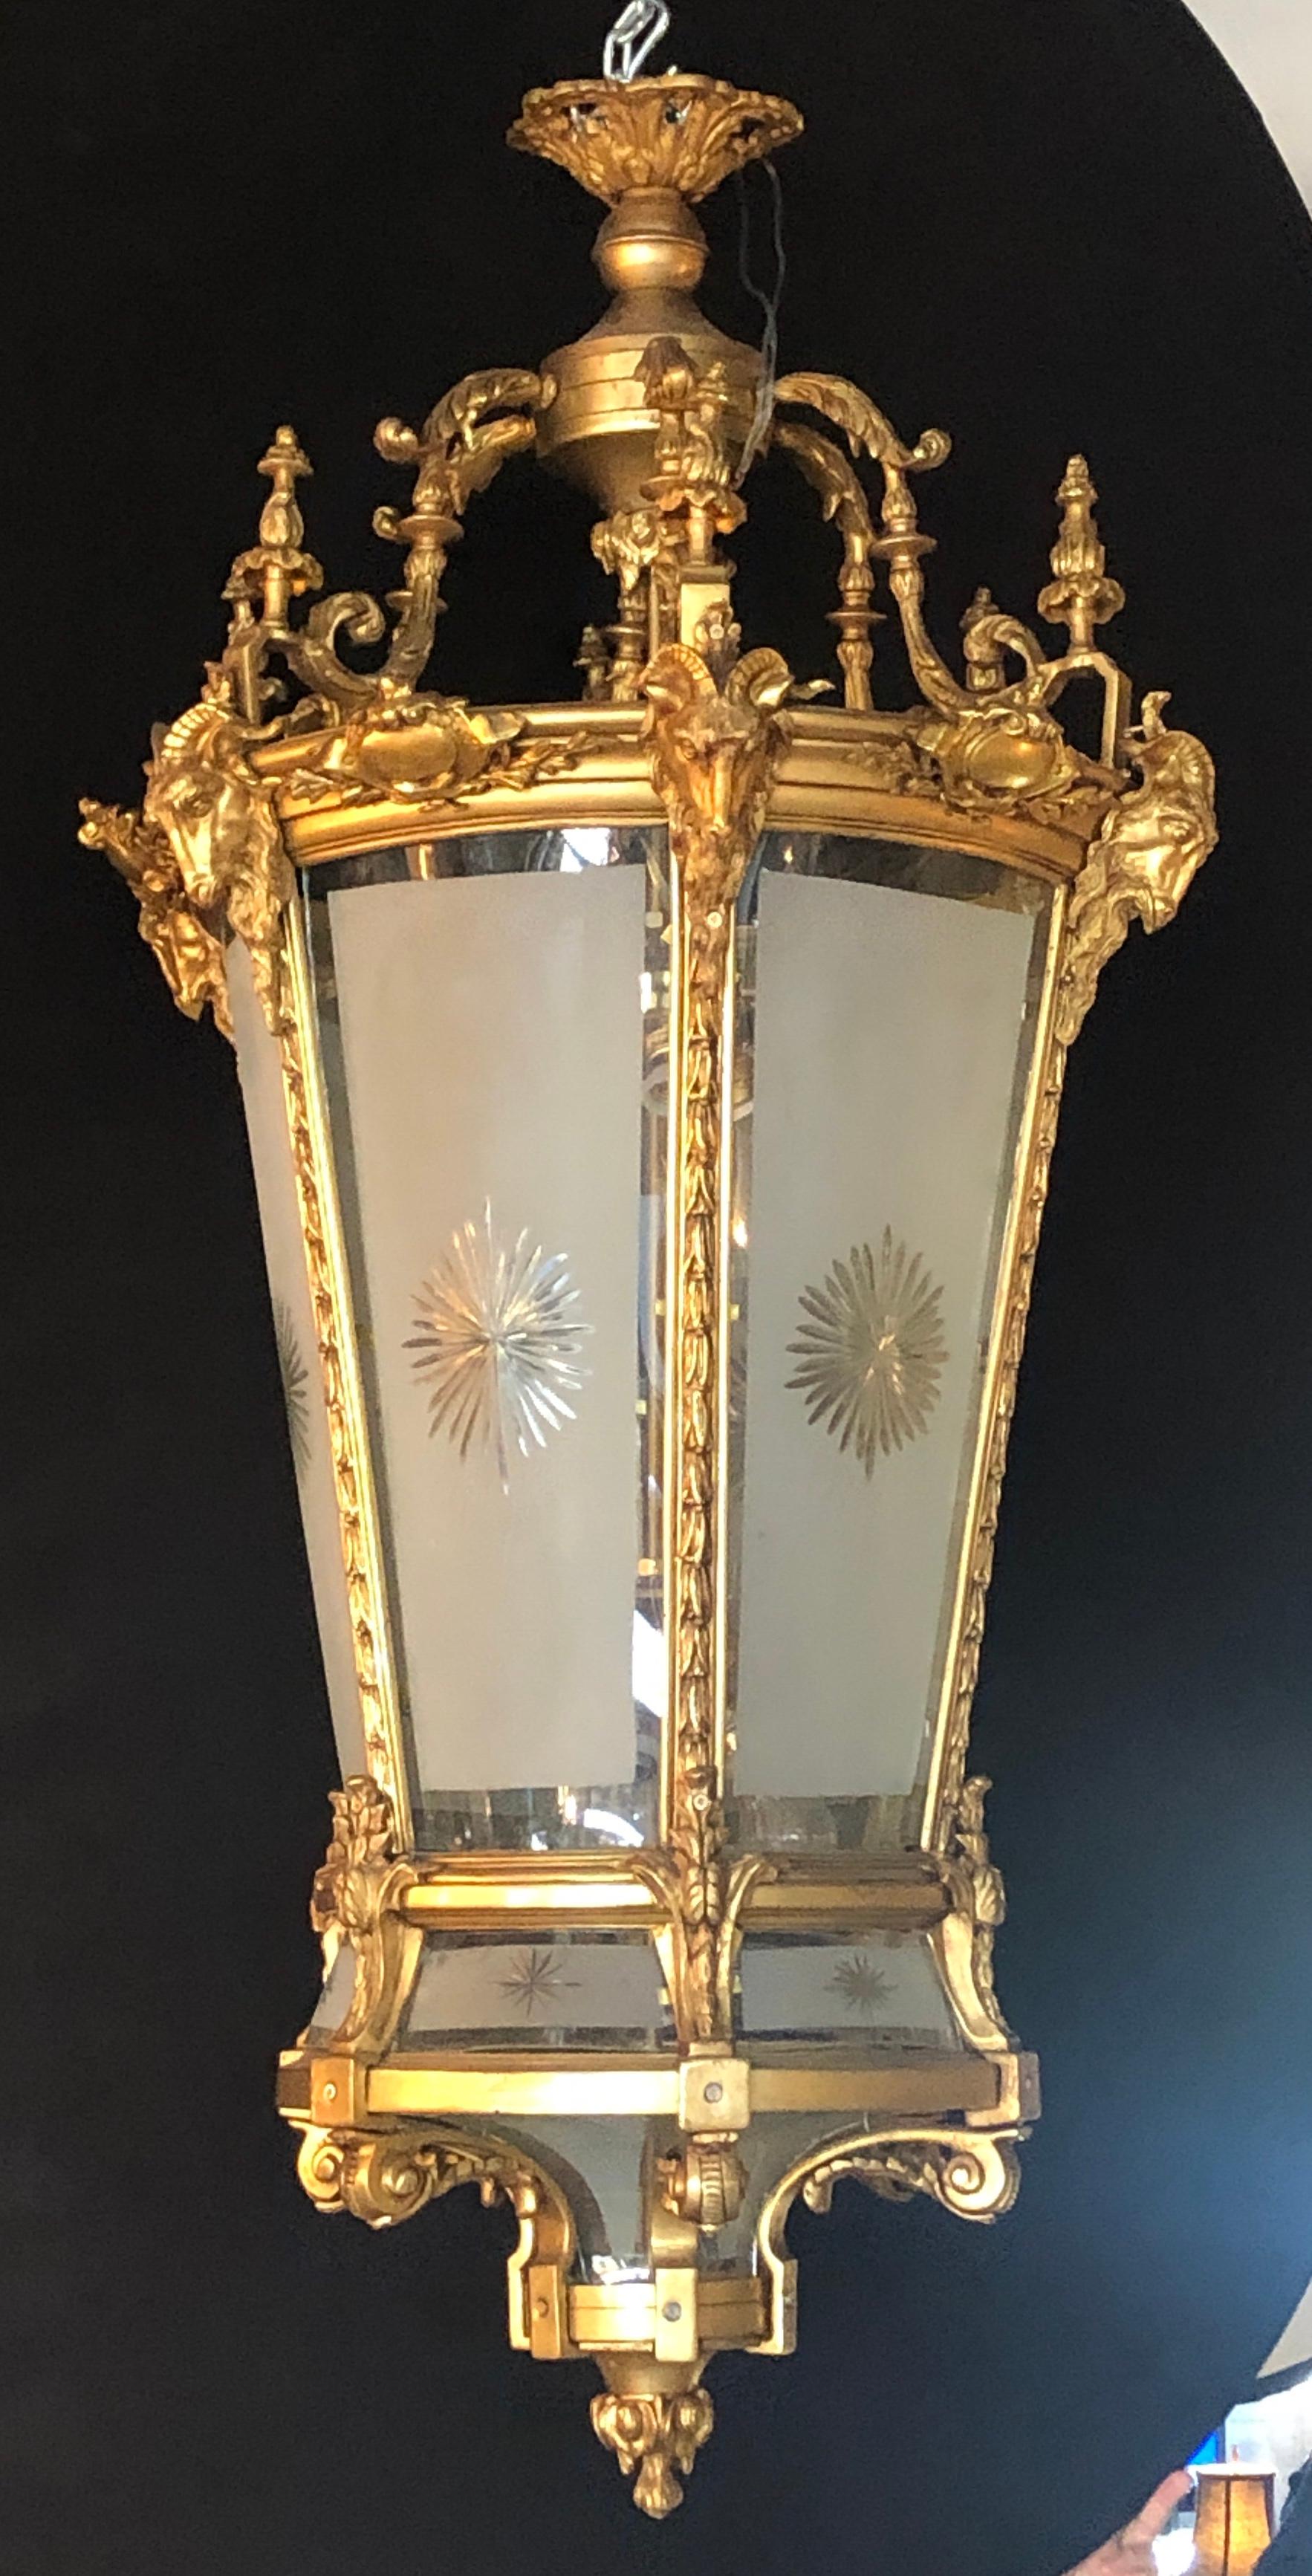 Zwei monumentale Widderkopf-Laternen aus geätztem Glas im Louis-XVI-Stil aus Doré-Bronze. Diese spektakulären, einmaligen Laternen sind einfach zu schön, um sie zu sehen. Die satinierten und geätzten, sternförmig gebogenen Glasscheiben sind in eine